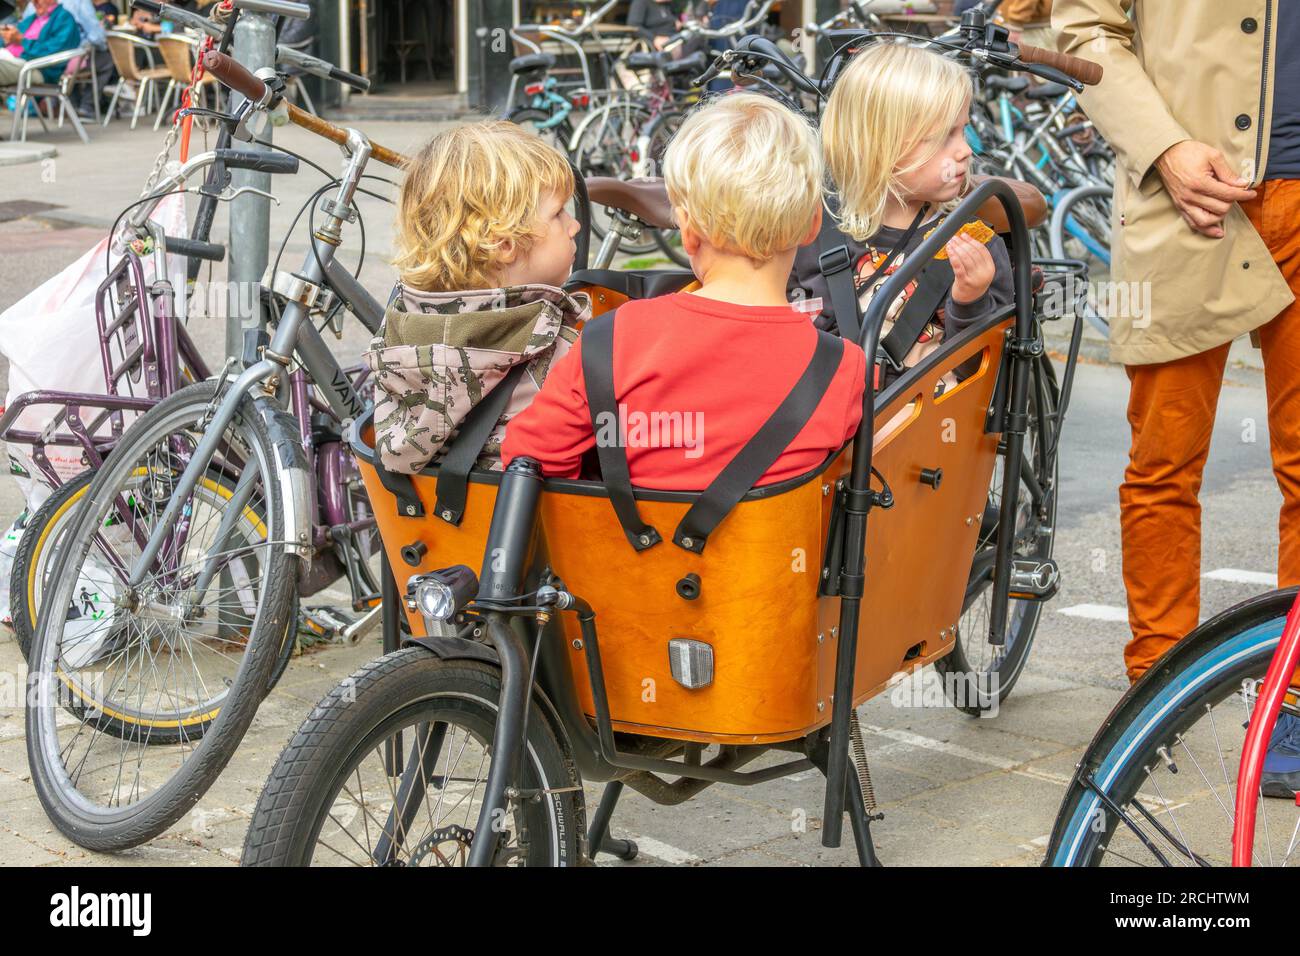 https://c8.alamy.com/compde/2rchtwm/niederlande-drei-kinder-sitzen-in-einem-speziellen-fahrrad-korb-in-amsterdam-und-legen-den-sicherheitsgurt-an-2rchtwm.jpg